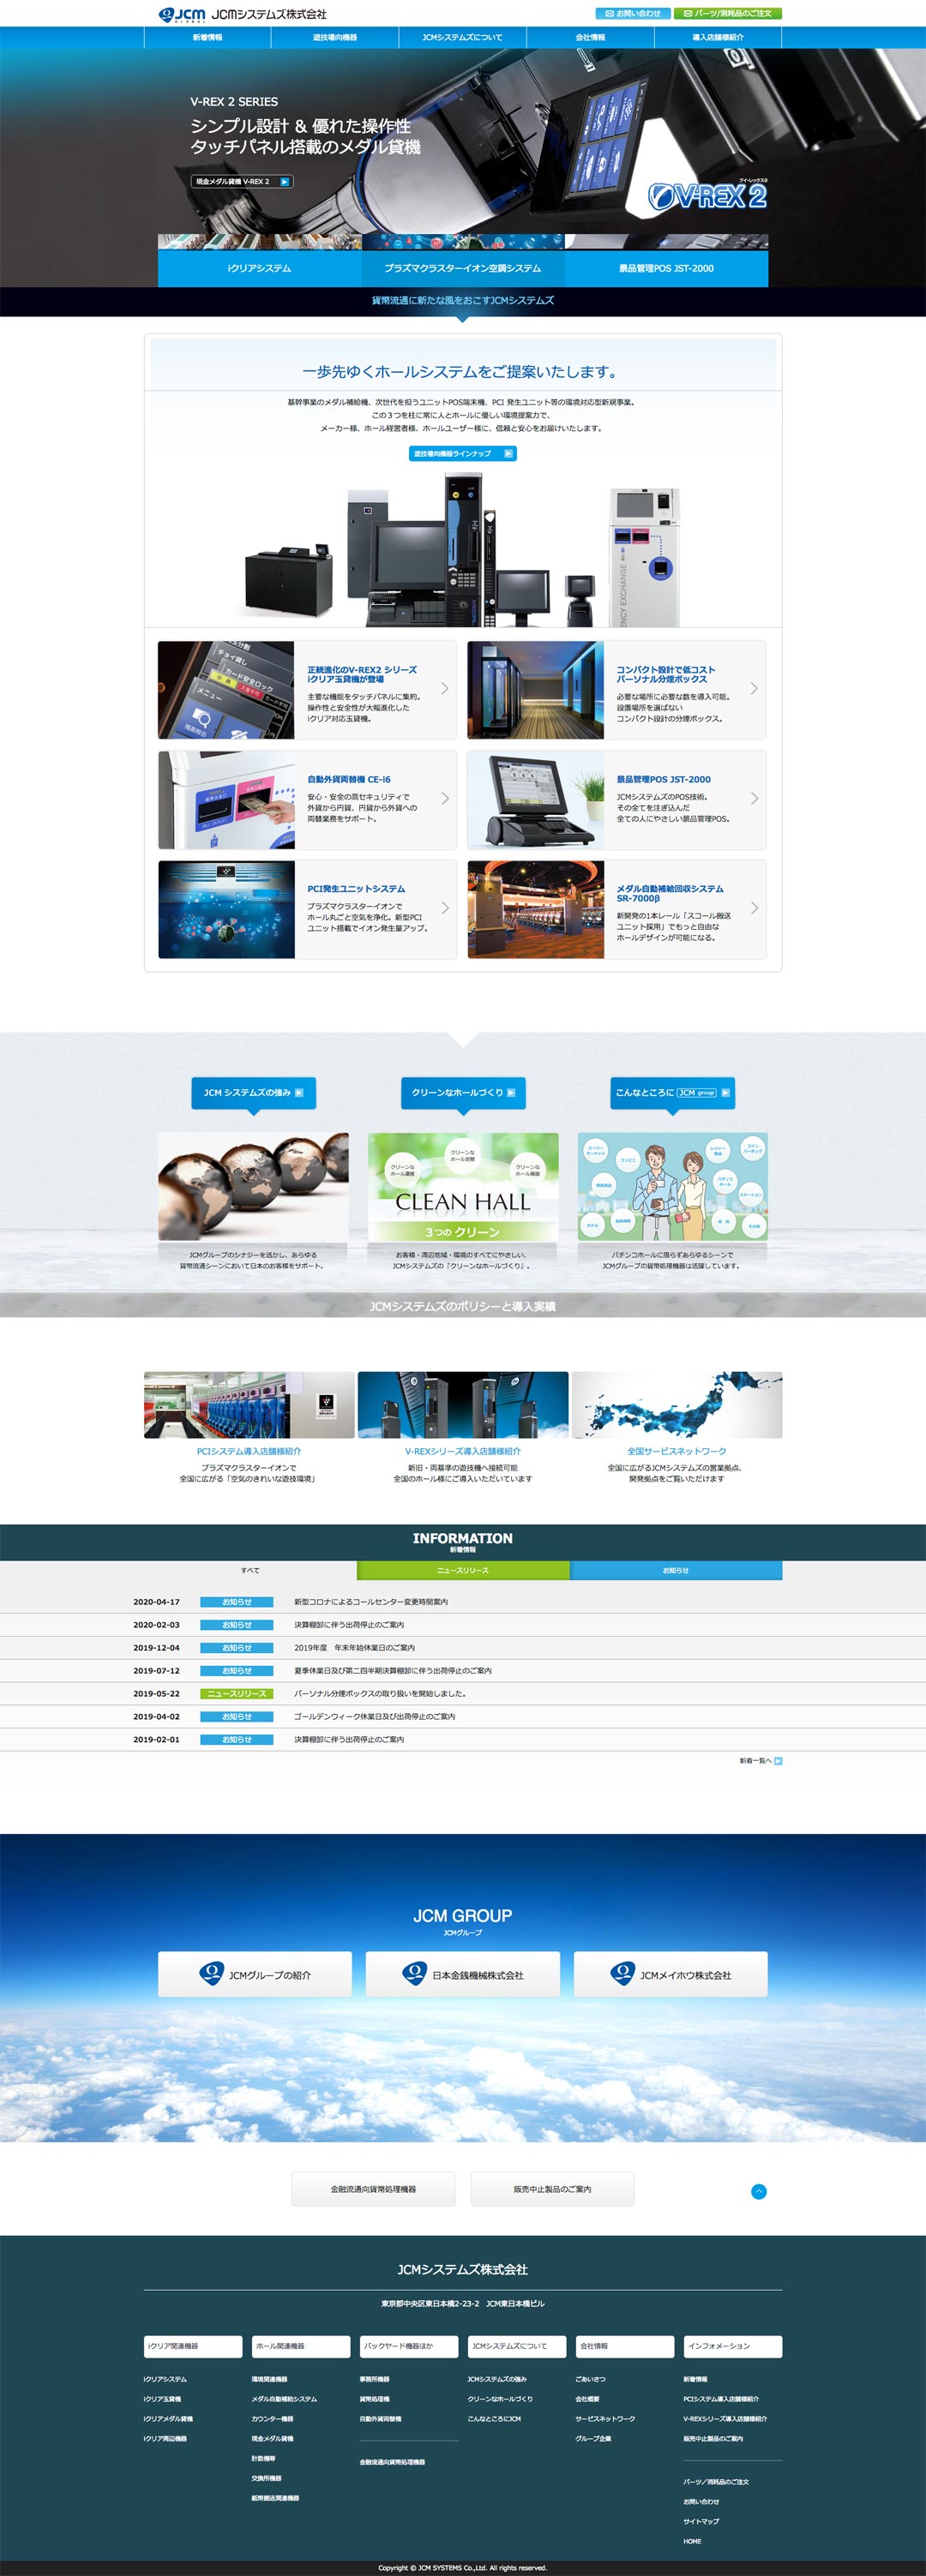 遊技ホーム向システム開発/製造/販売会社 ホームページ デザイン サンプル TOPページ